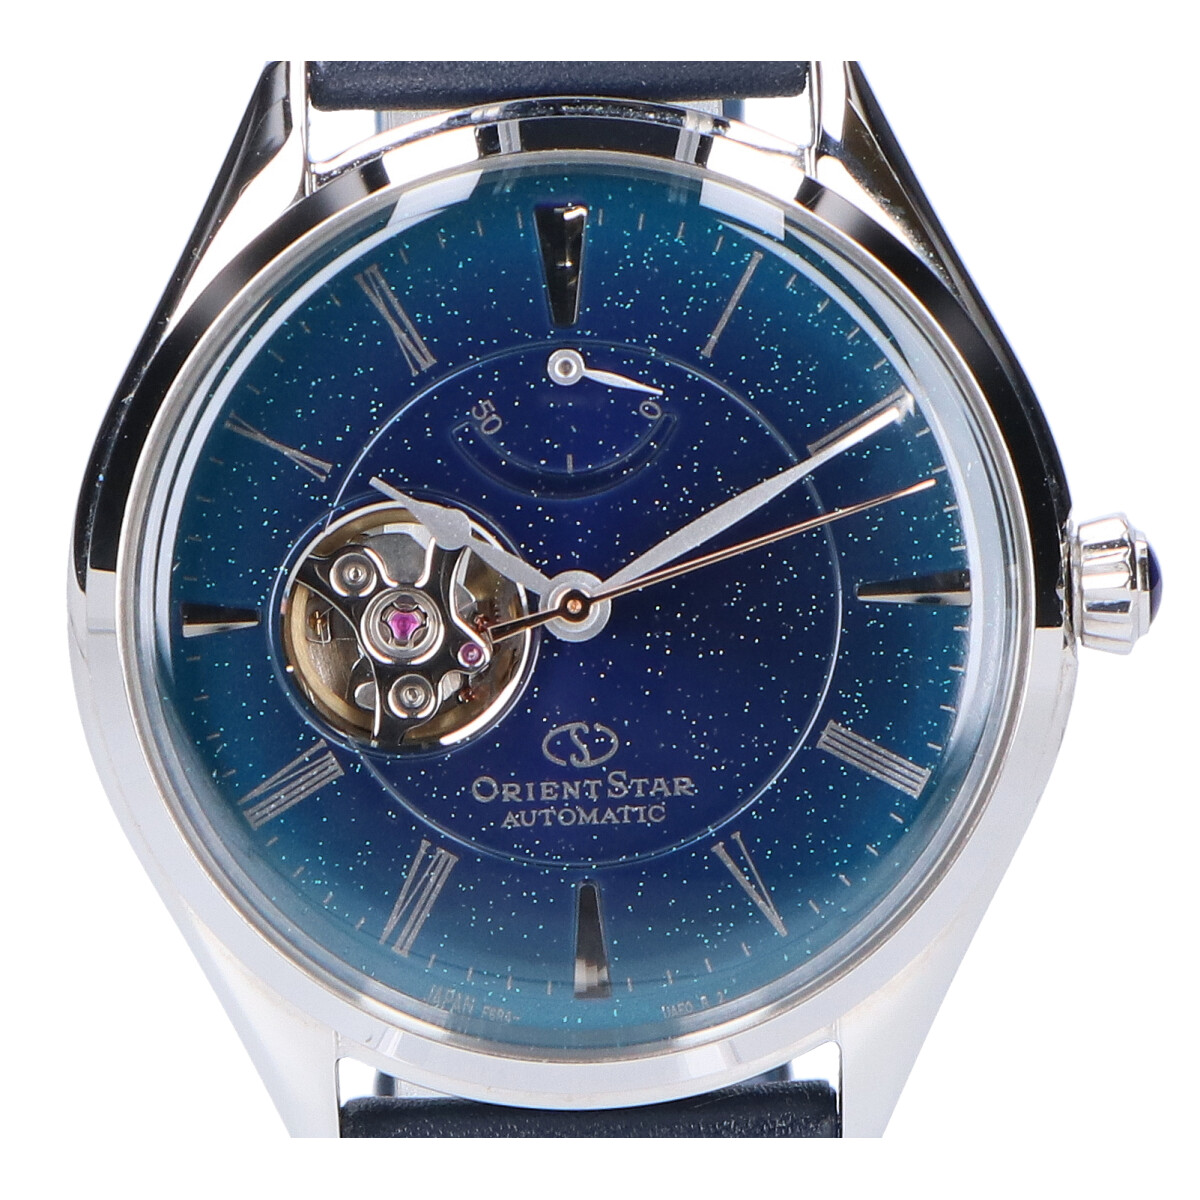 オリエントのRK-AT0205L Cal.F6R4 クラシックセミスケルトン 70周年記念数量限定モデルシースルーバック自動巻き腕時計の買取実績です。